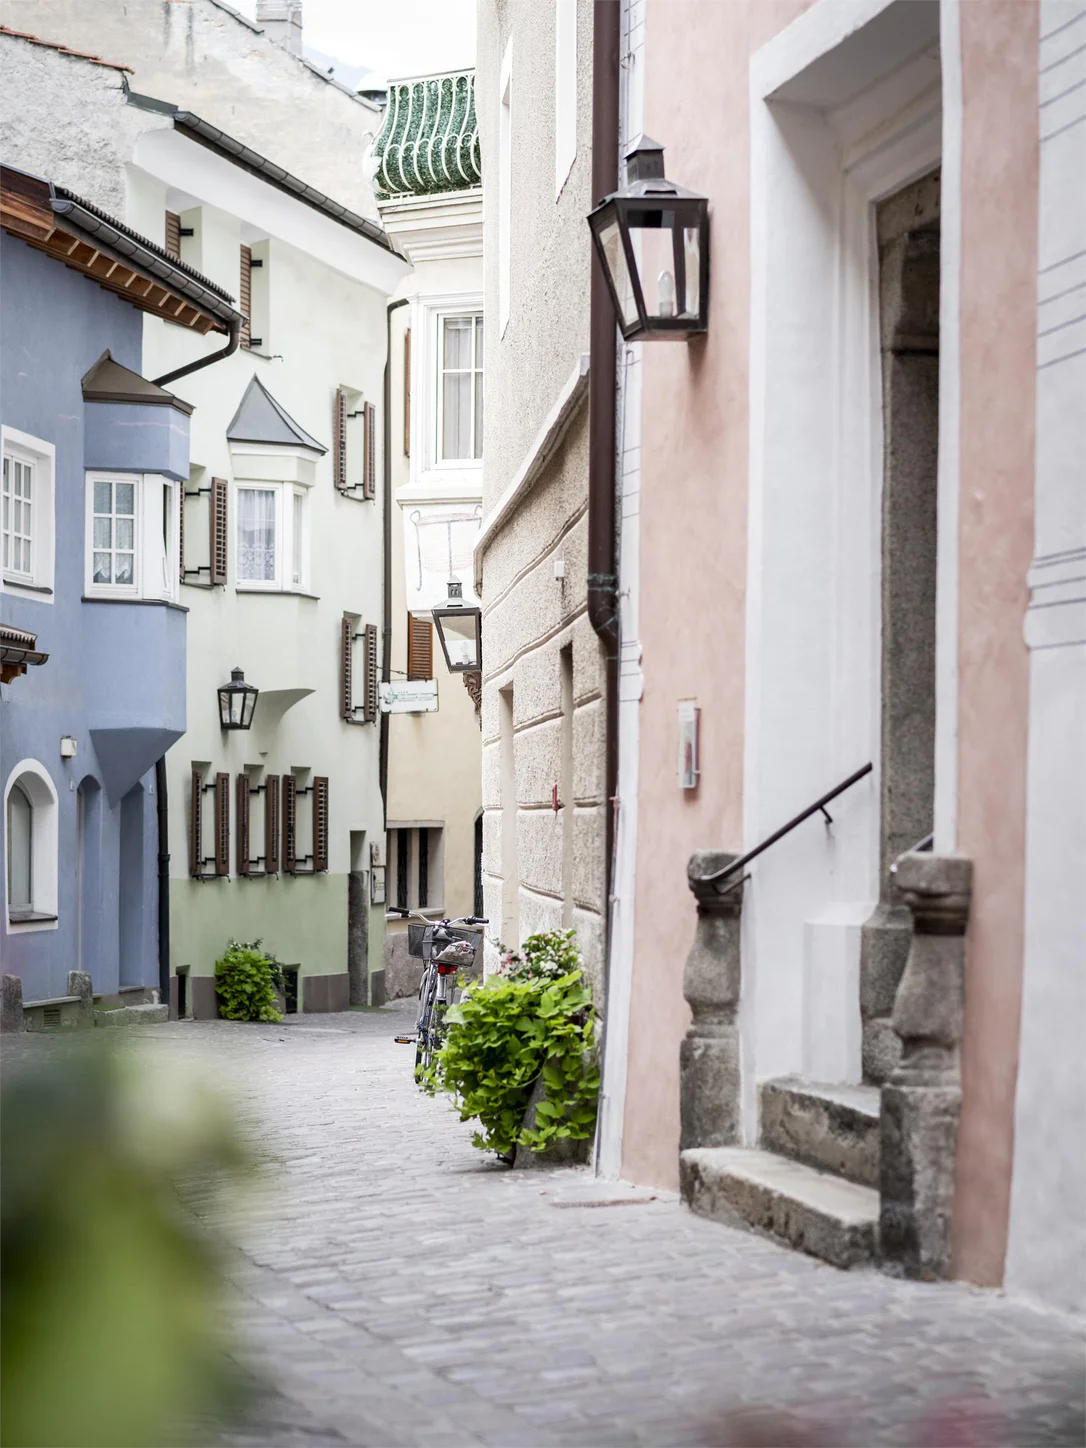 Stufels, ältester Stadtteil von Brixen